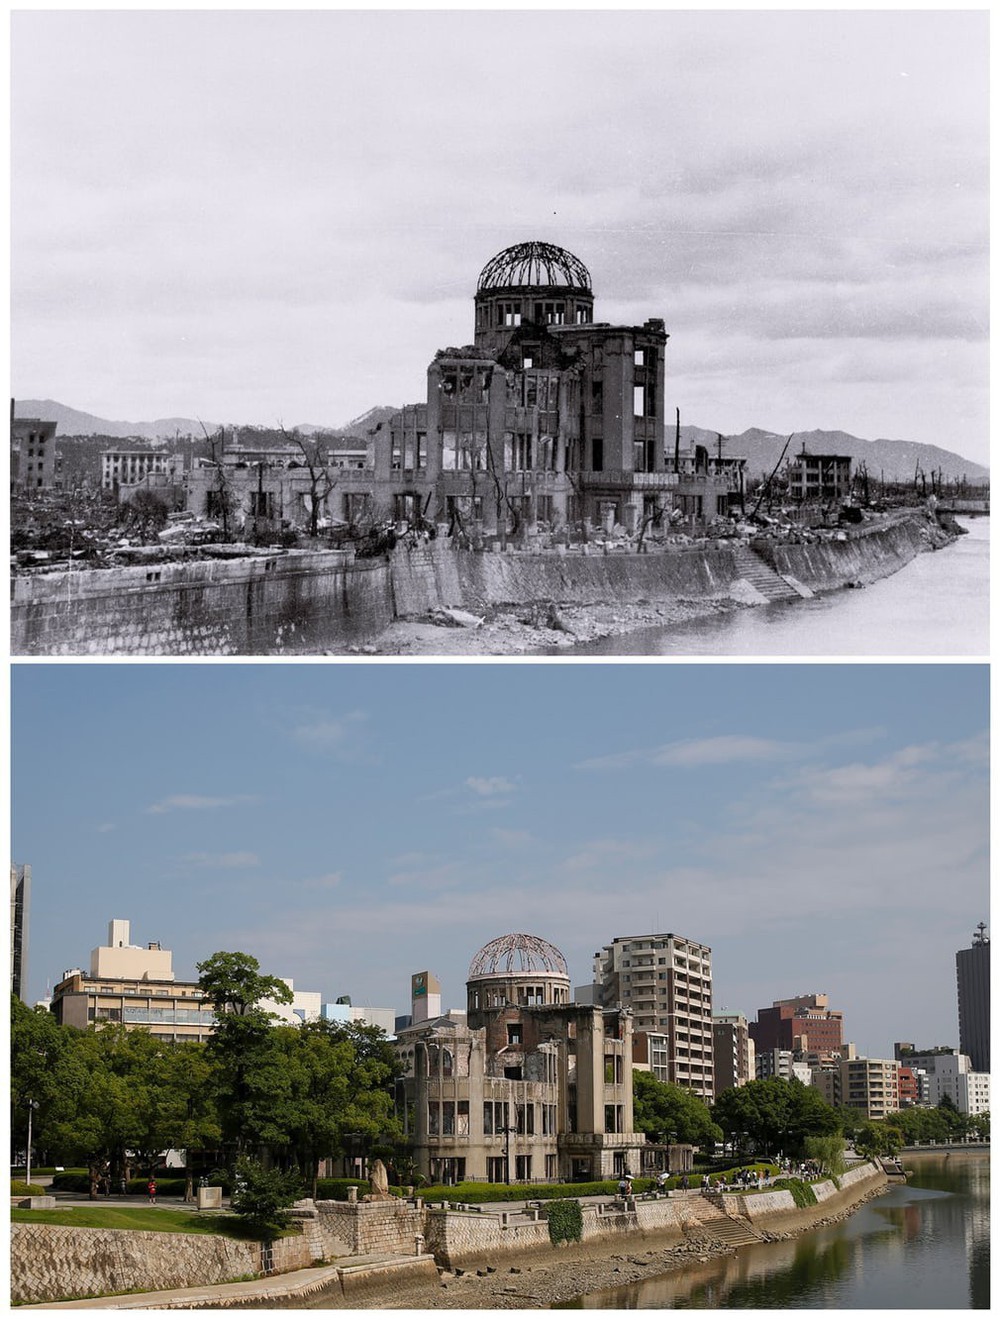 74 năm sau thảm họa bom nguyên tử: Thành phố Hiroshima và Nagasaki hồi sinh mạnh mẽ, người sống sót nhưng tâm tư mãi nằm lại ở quá khứ - Ảnh 8.